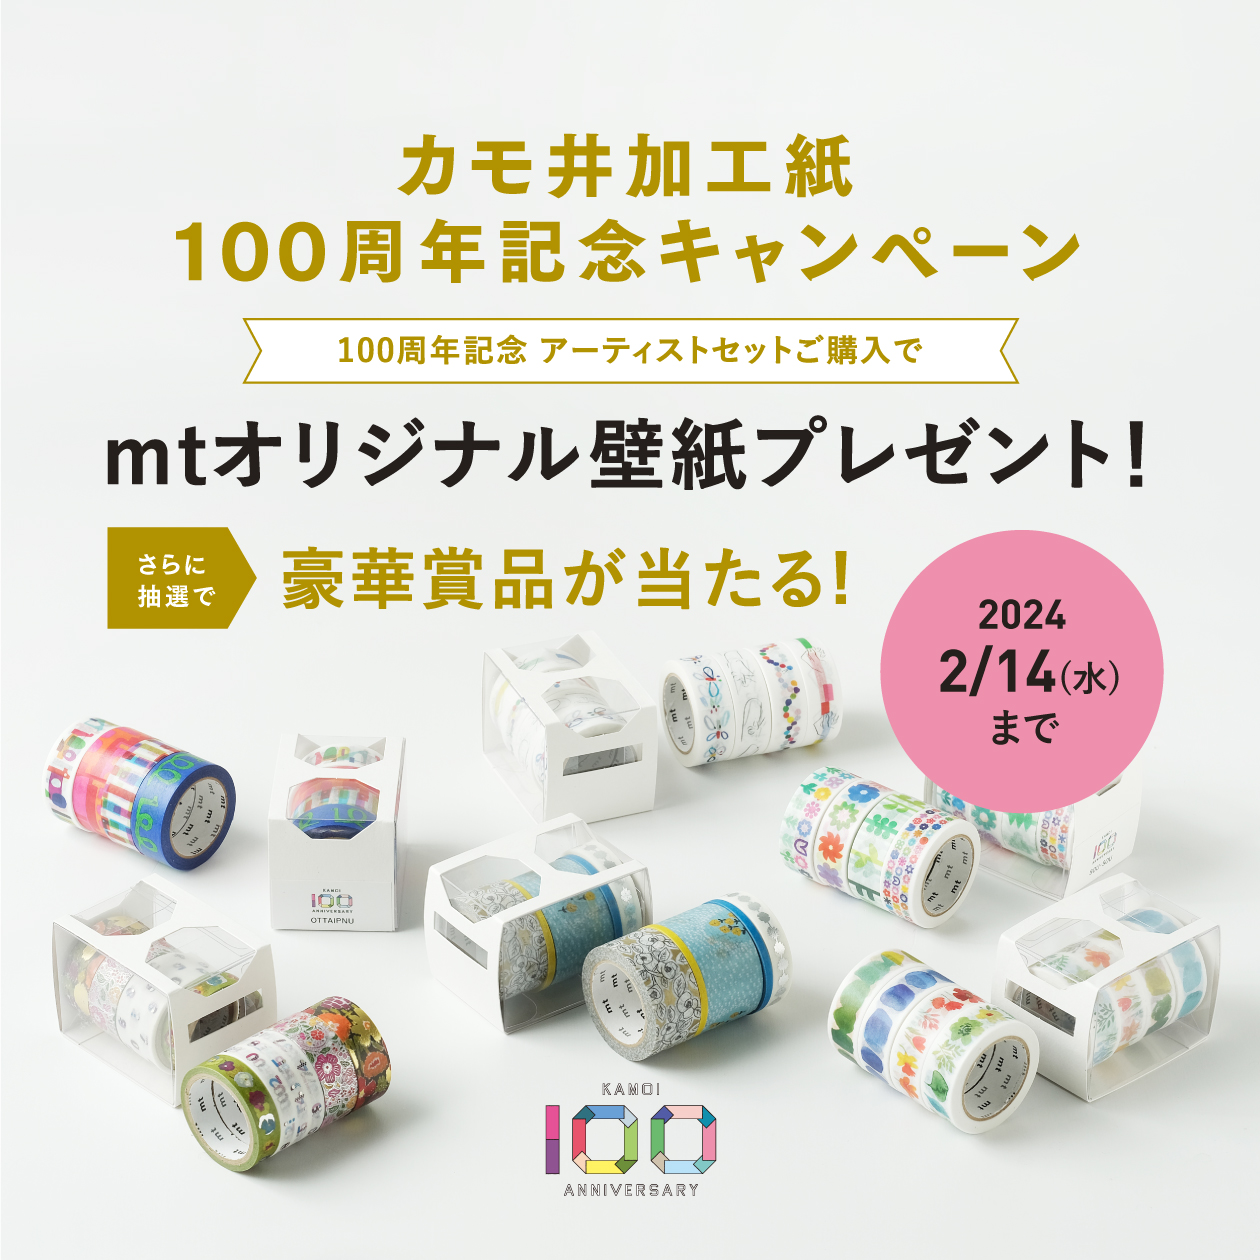 100周年記念 mina perhonenセット | mt | マスキングテープ「mt 